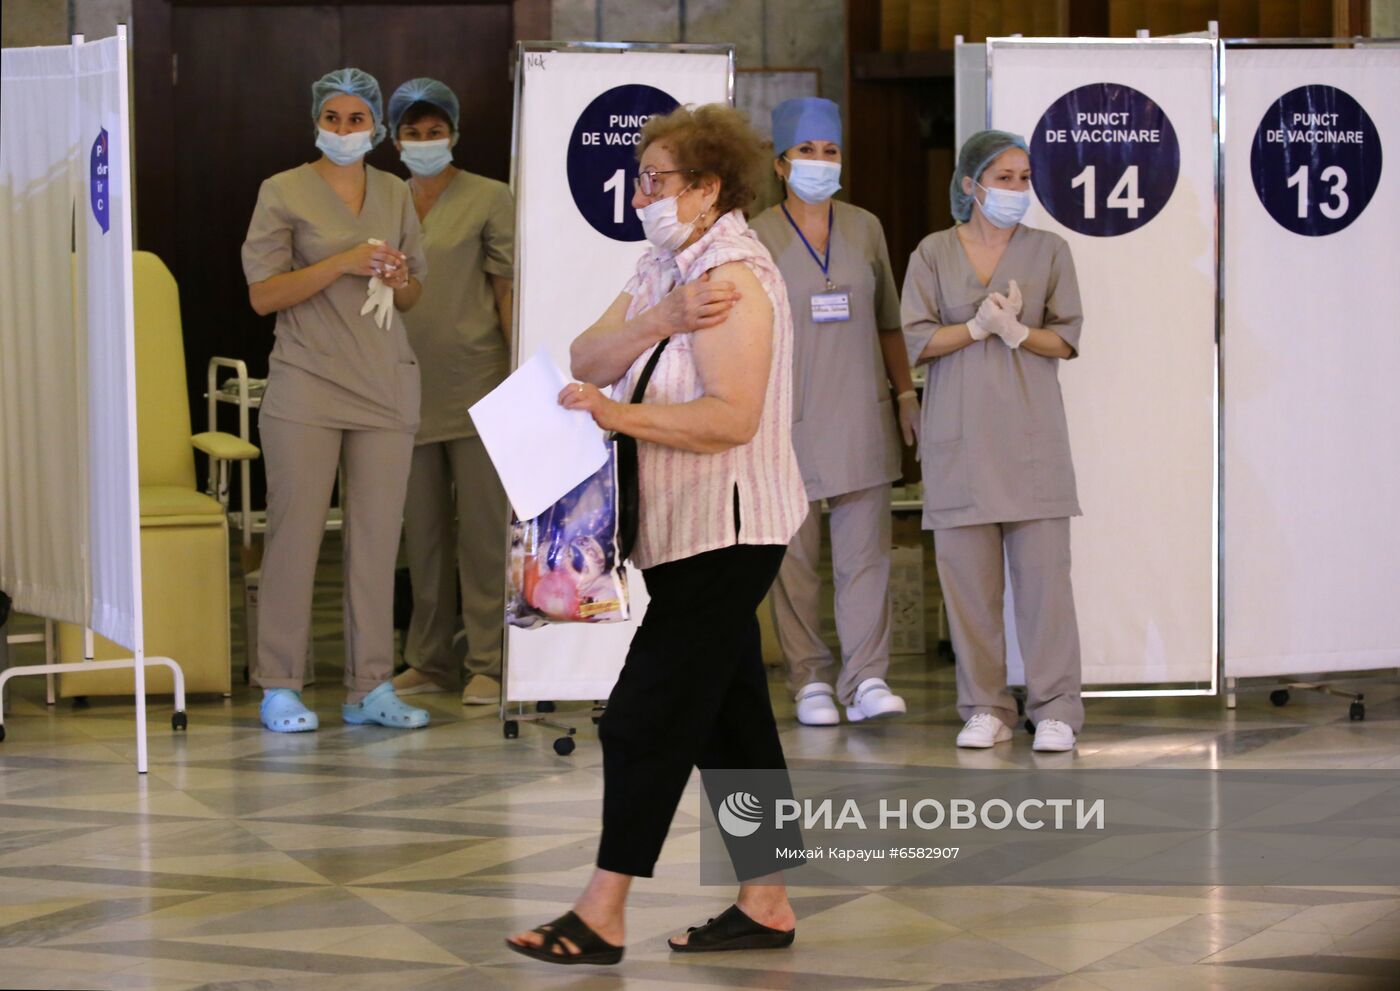 "Марафон" вакцинации российской вакциной "Спутник V" в Кишиневе